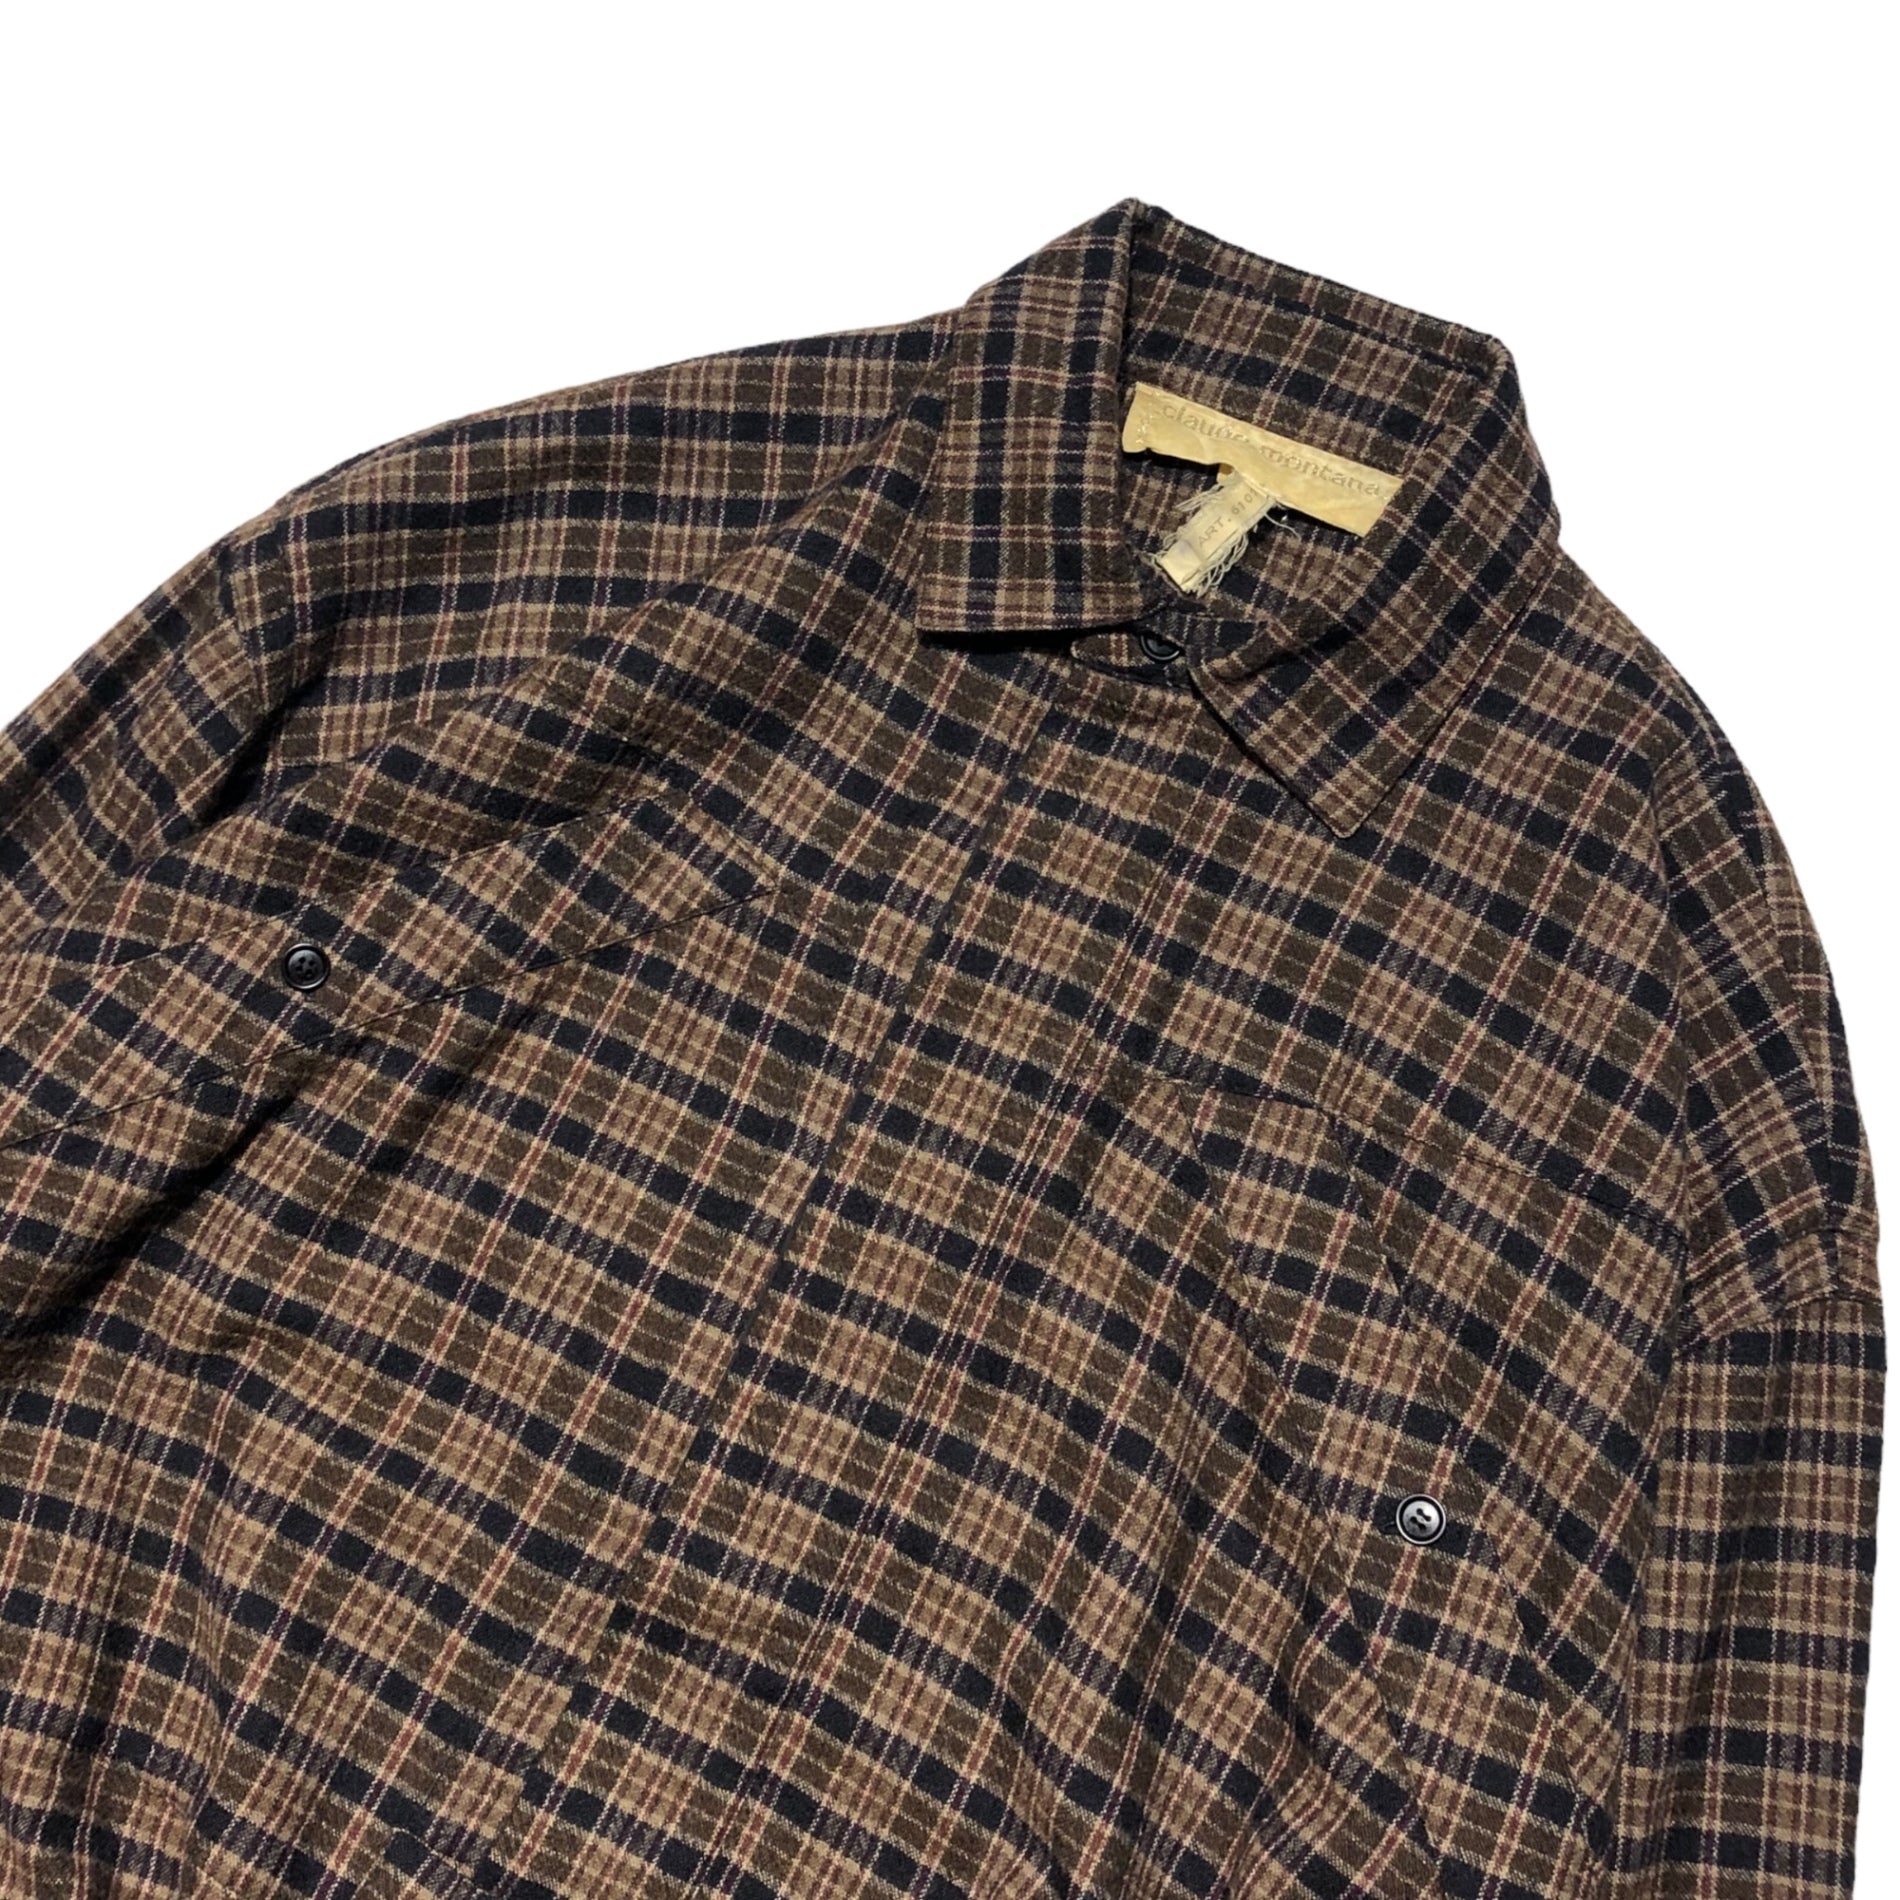 CLAUDE MONTANA(クロードモンタナ) 80's Wool check pullover short blouson ウール チェック プルオーバー 短丈 ブルゾン MOD.713 ART.6107 表記なし(L～XL程度) ブラウン×ブラック MADE IN ITALY